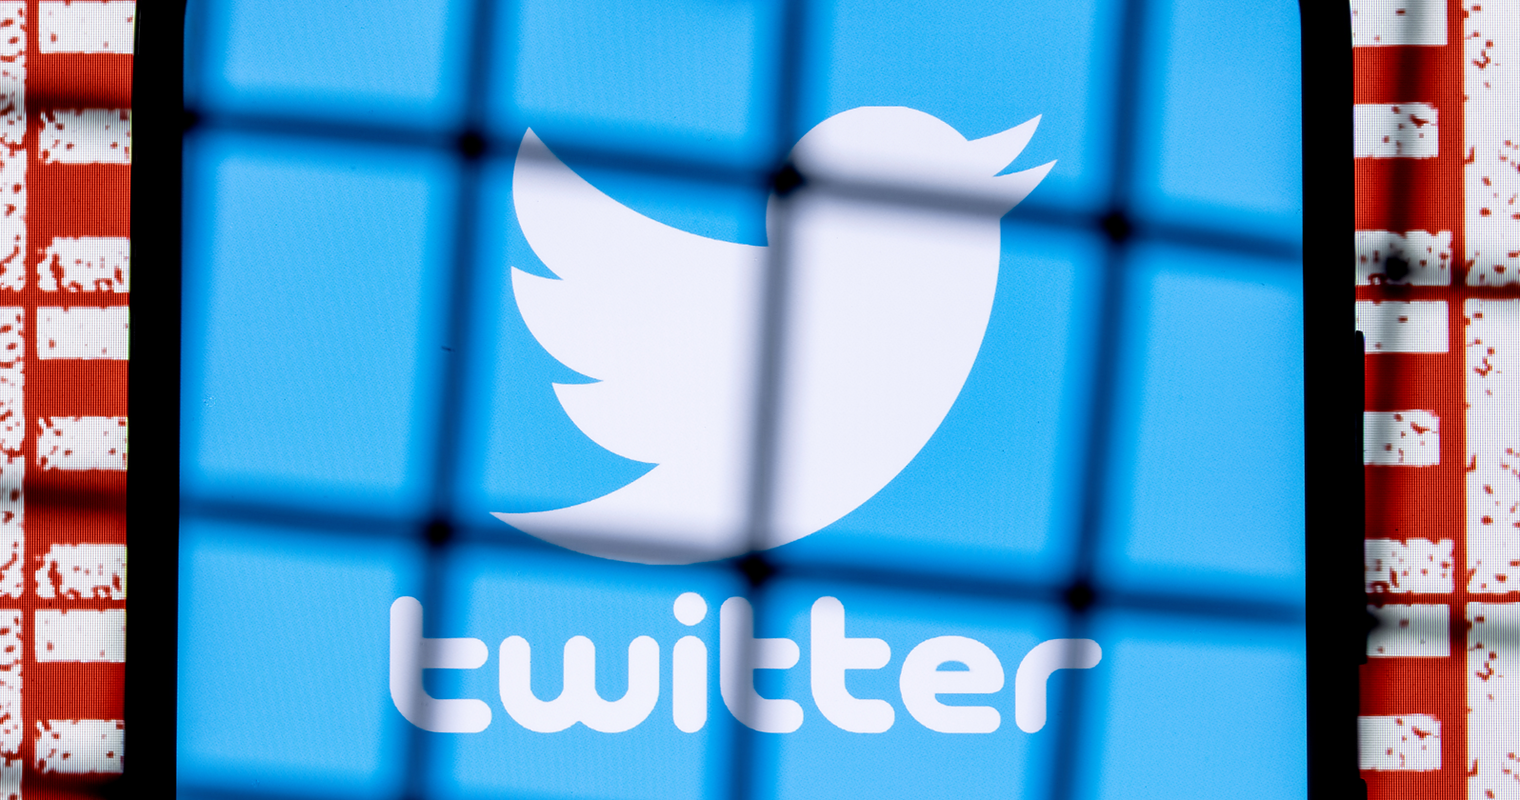 Twitter prohíbe compartir fotos de personas privadas sin consentimiento